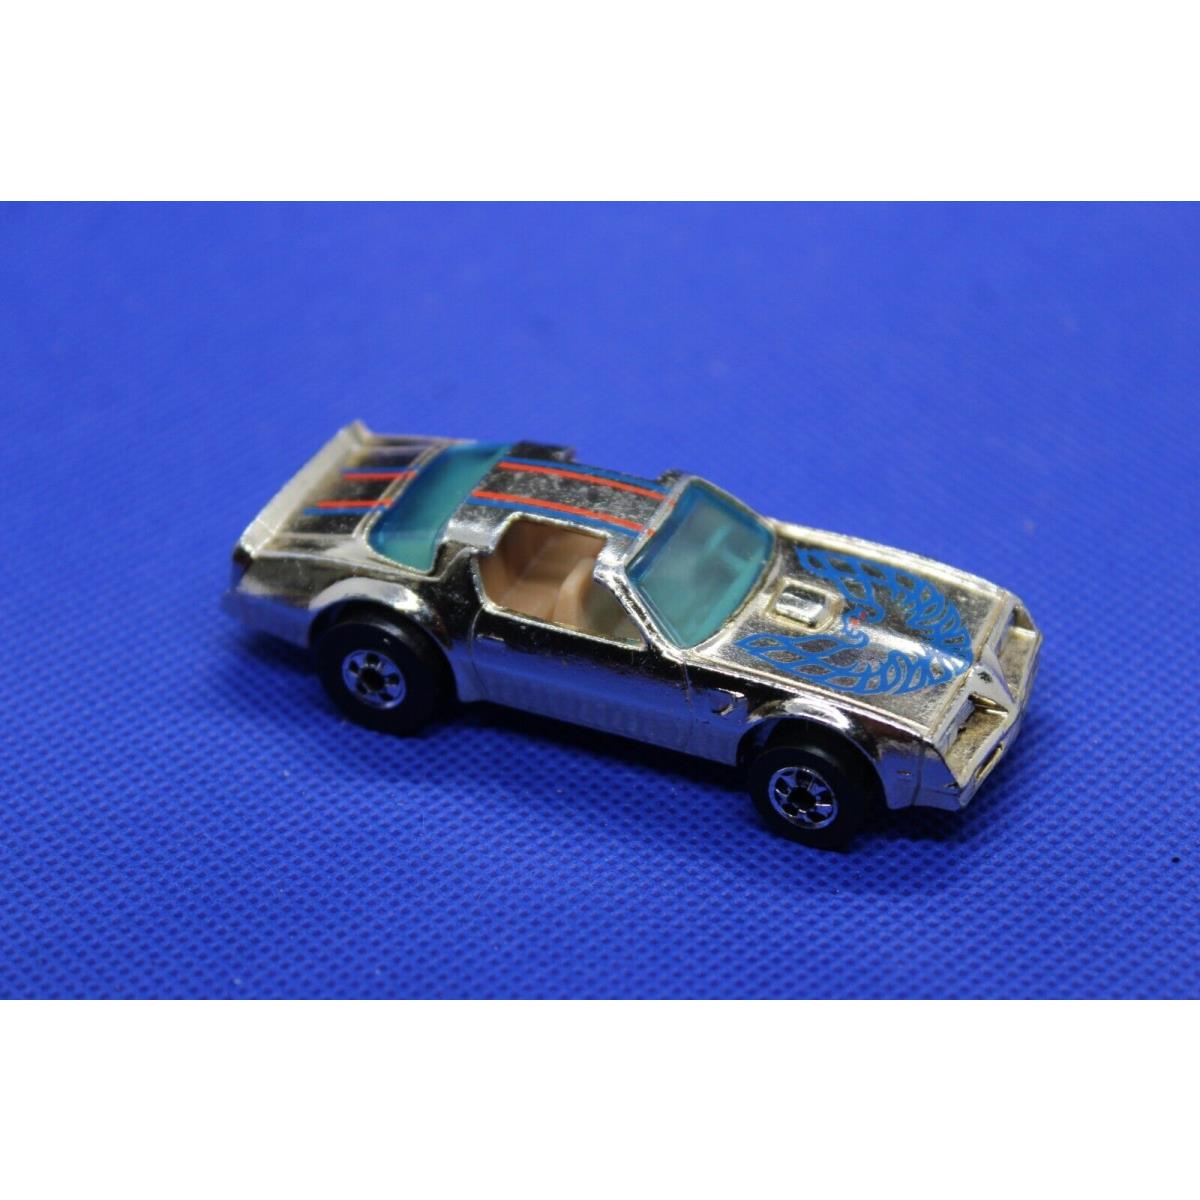 1979 Hot Wheels-gold Chrome Hot Bird-pontiac Firebird-6 Pack Car Exclusive-read